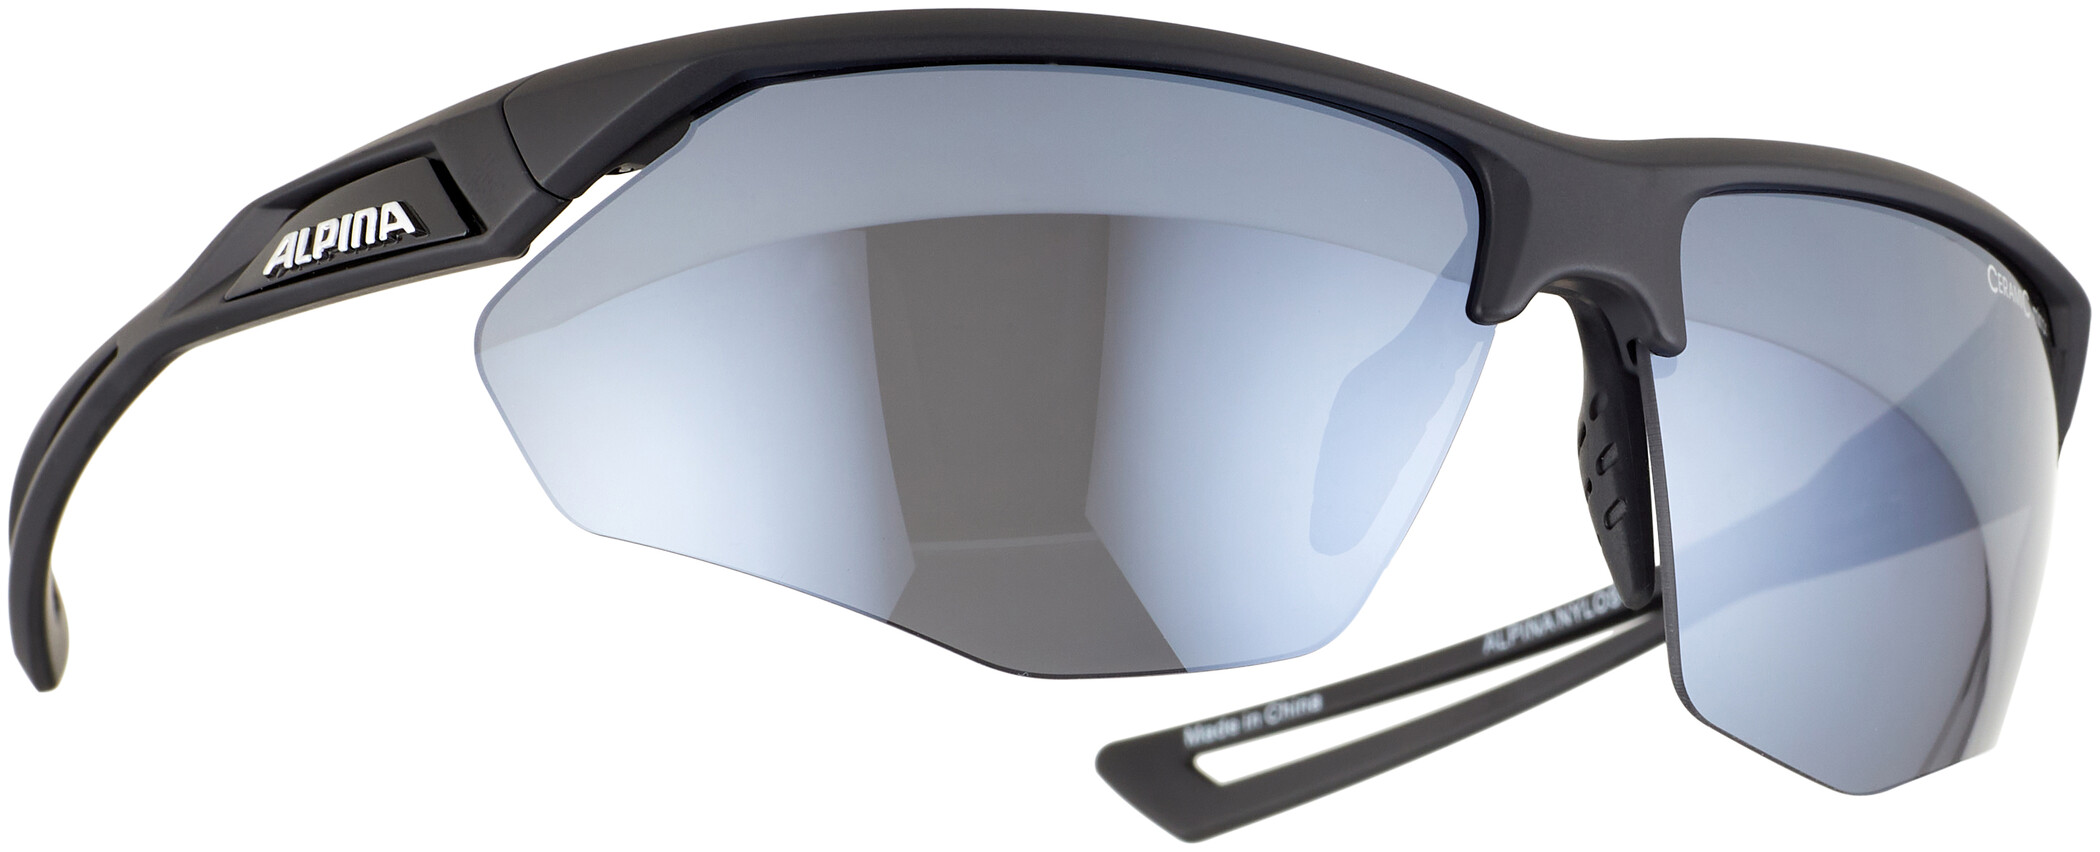 Alpina Nylos HR Fahrrad-Sonnenbrille verspiegelte Ceramic-Gläser 100% UV-Schutz 